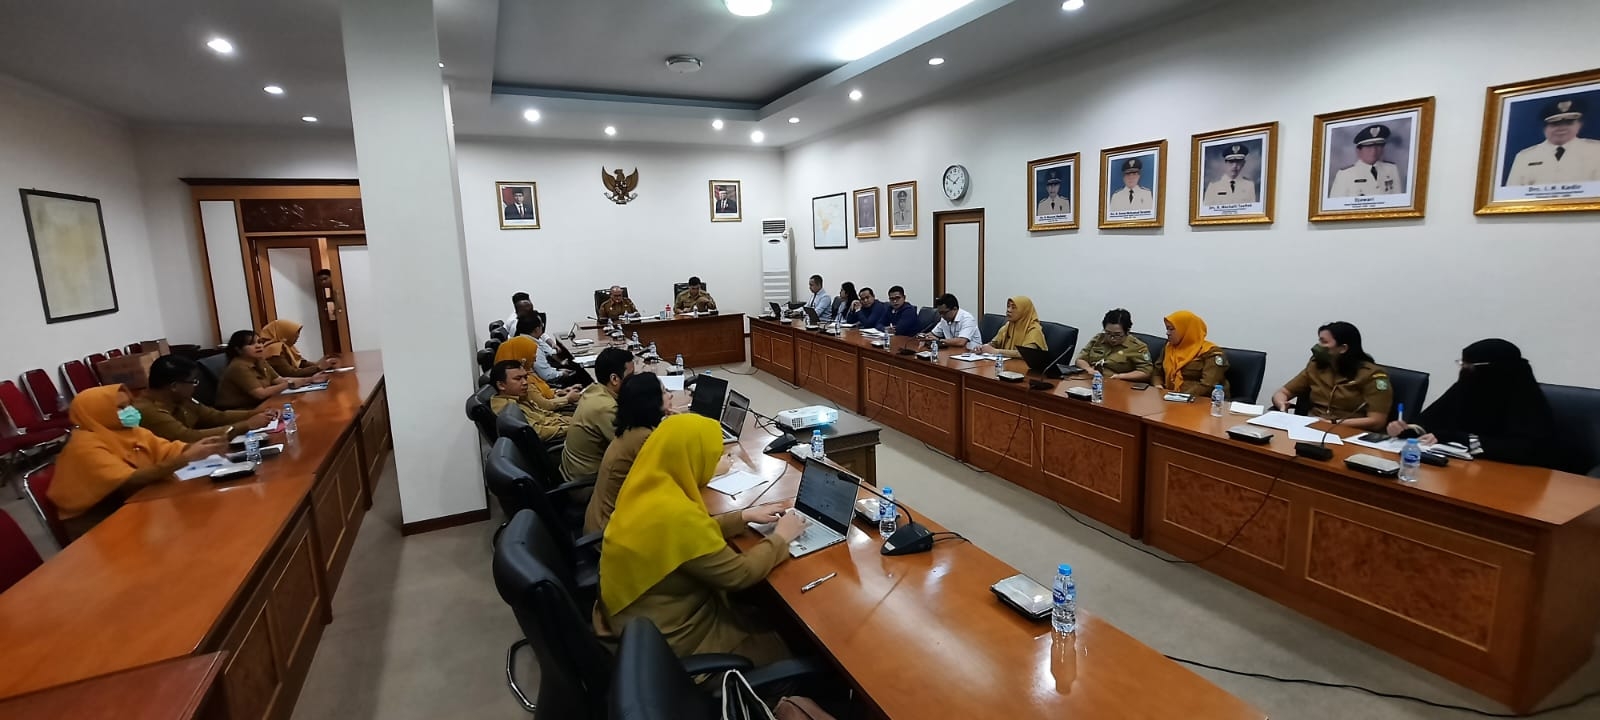 PONTIANAK - Biro Perekonomian Sekretariat Daerah Provinsi Kalimantan Barat menyelenggarakan Pertemuan untuk membahas Persiapan Rapat Pleno Tim Percepatan Akses Keuangan Daerah (TPAKD) Provinsi Kalimantan Barat pada hari Senin, 19 Juni 2023.